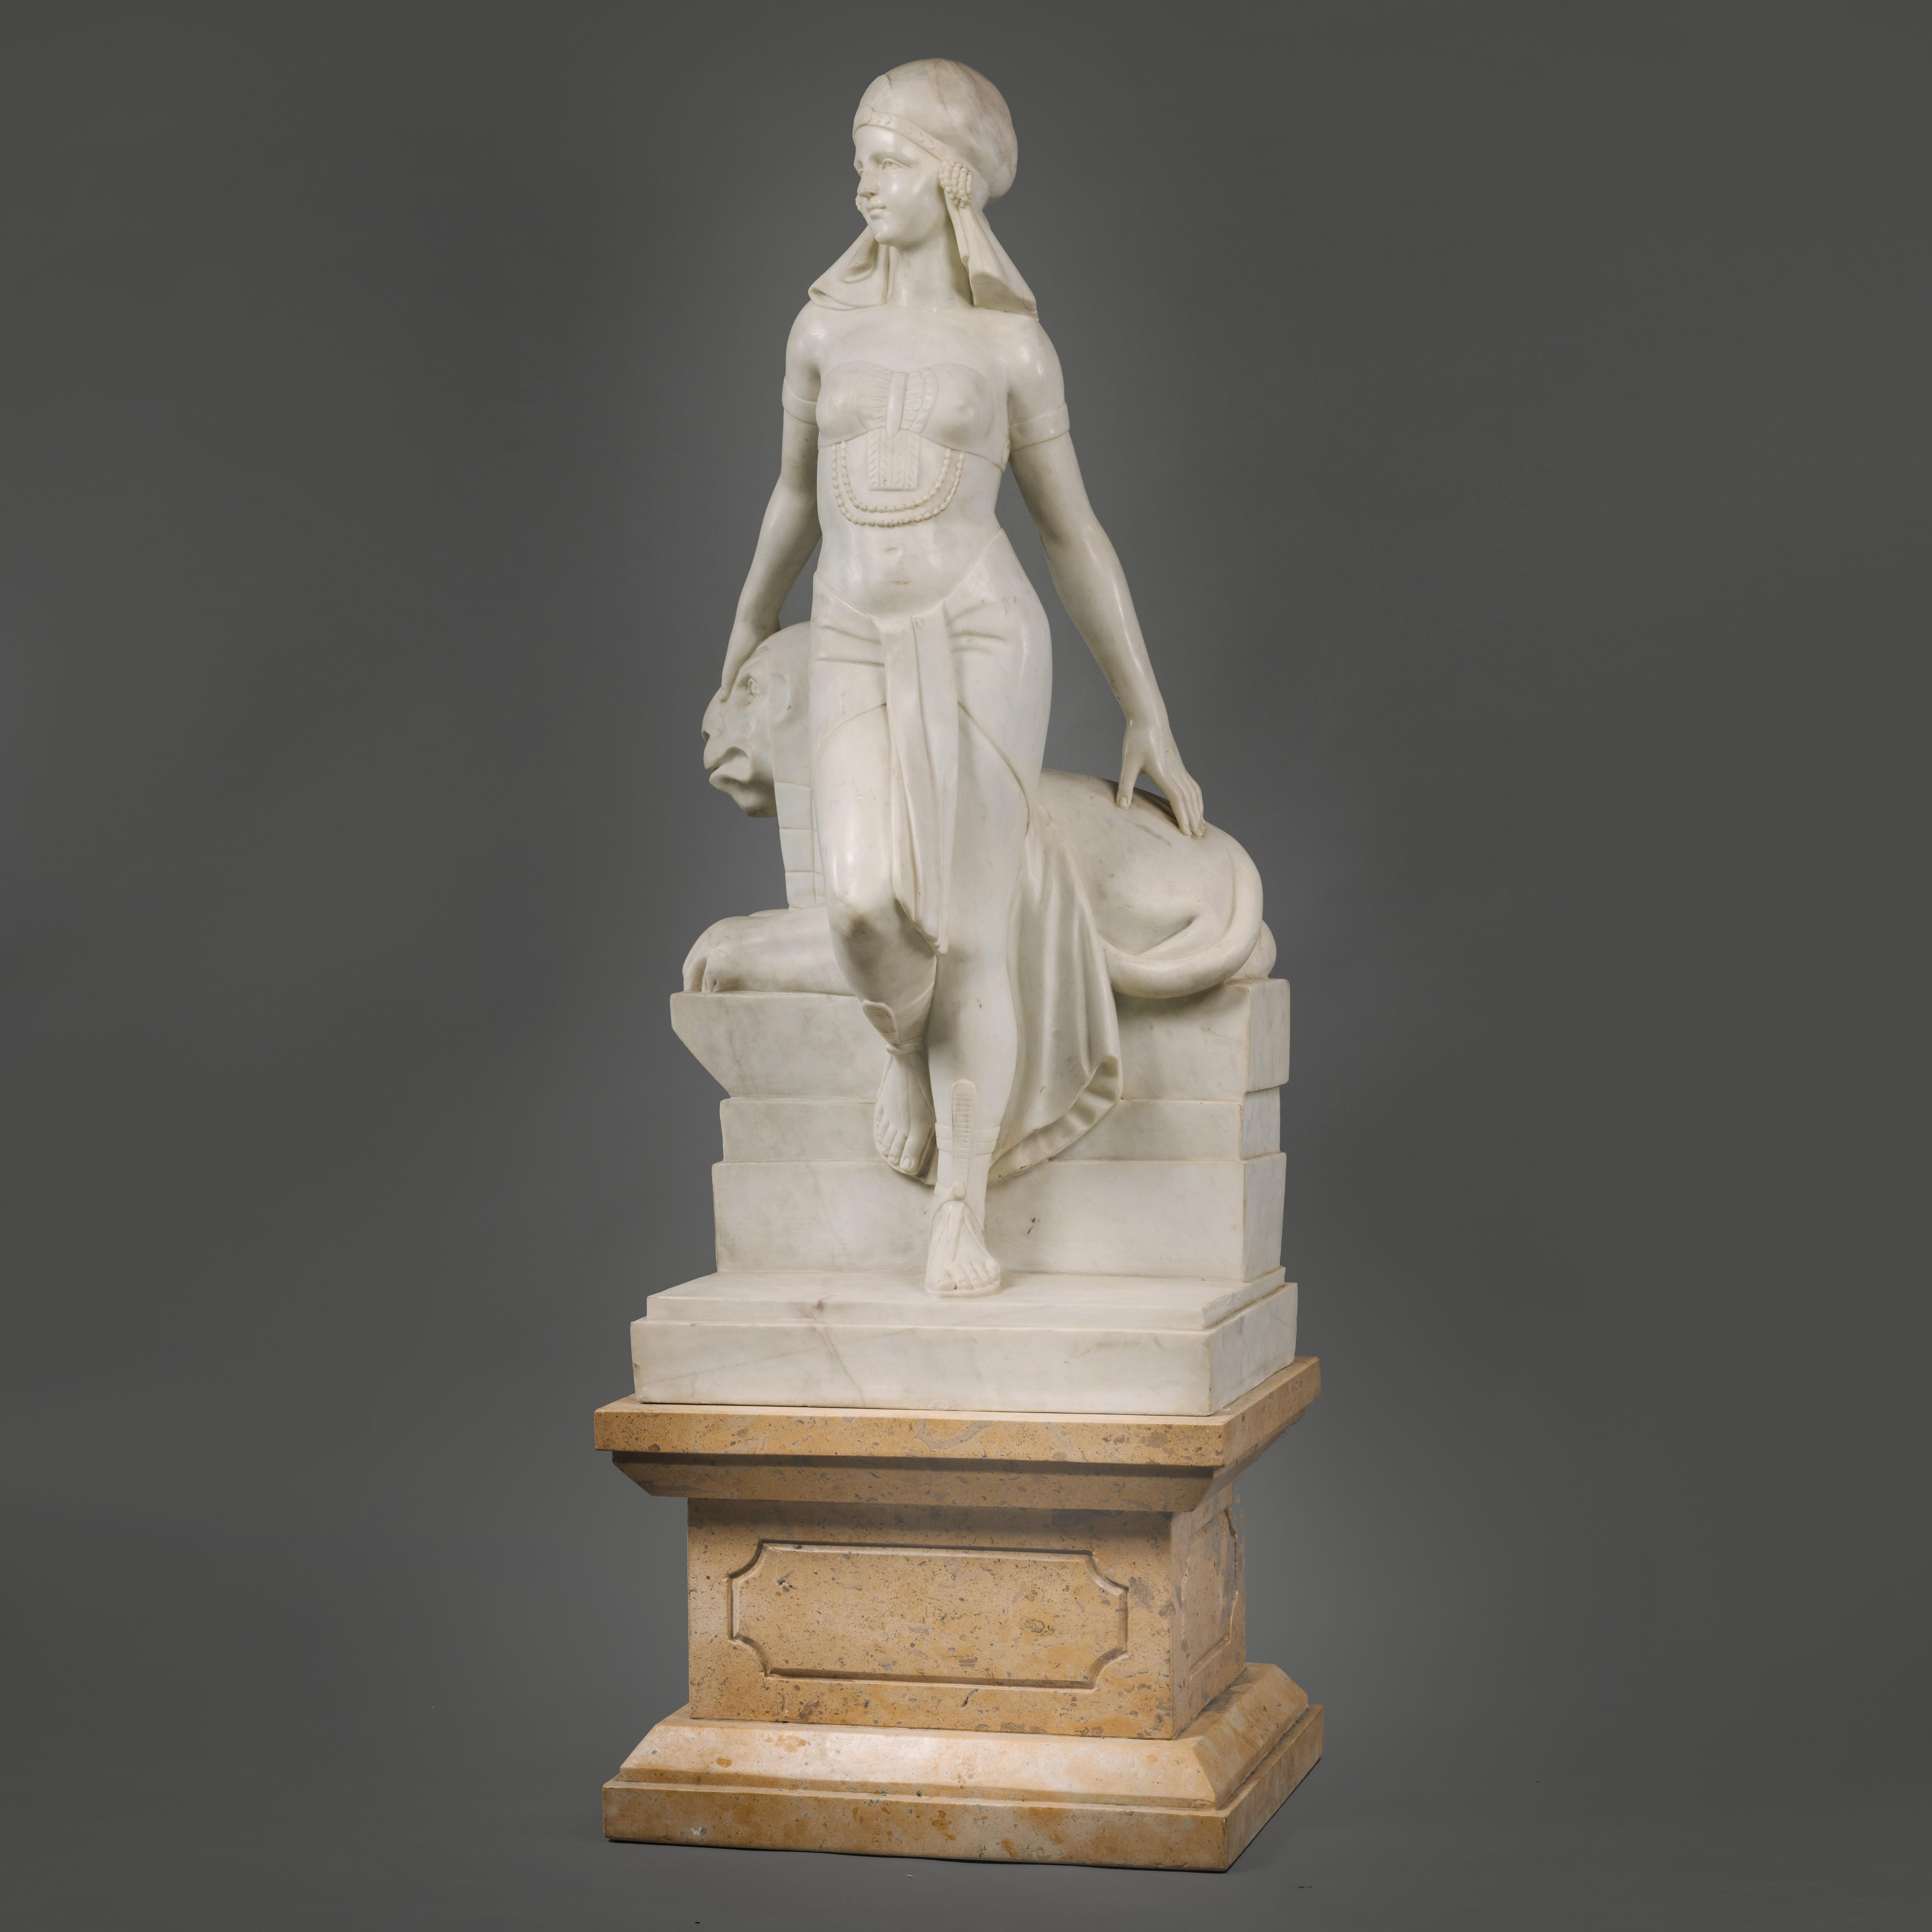 cleopatra statue in rome